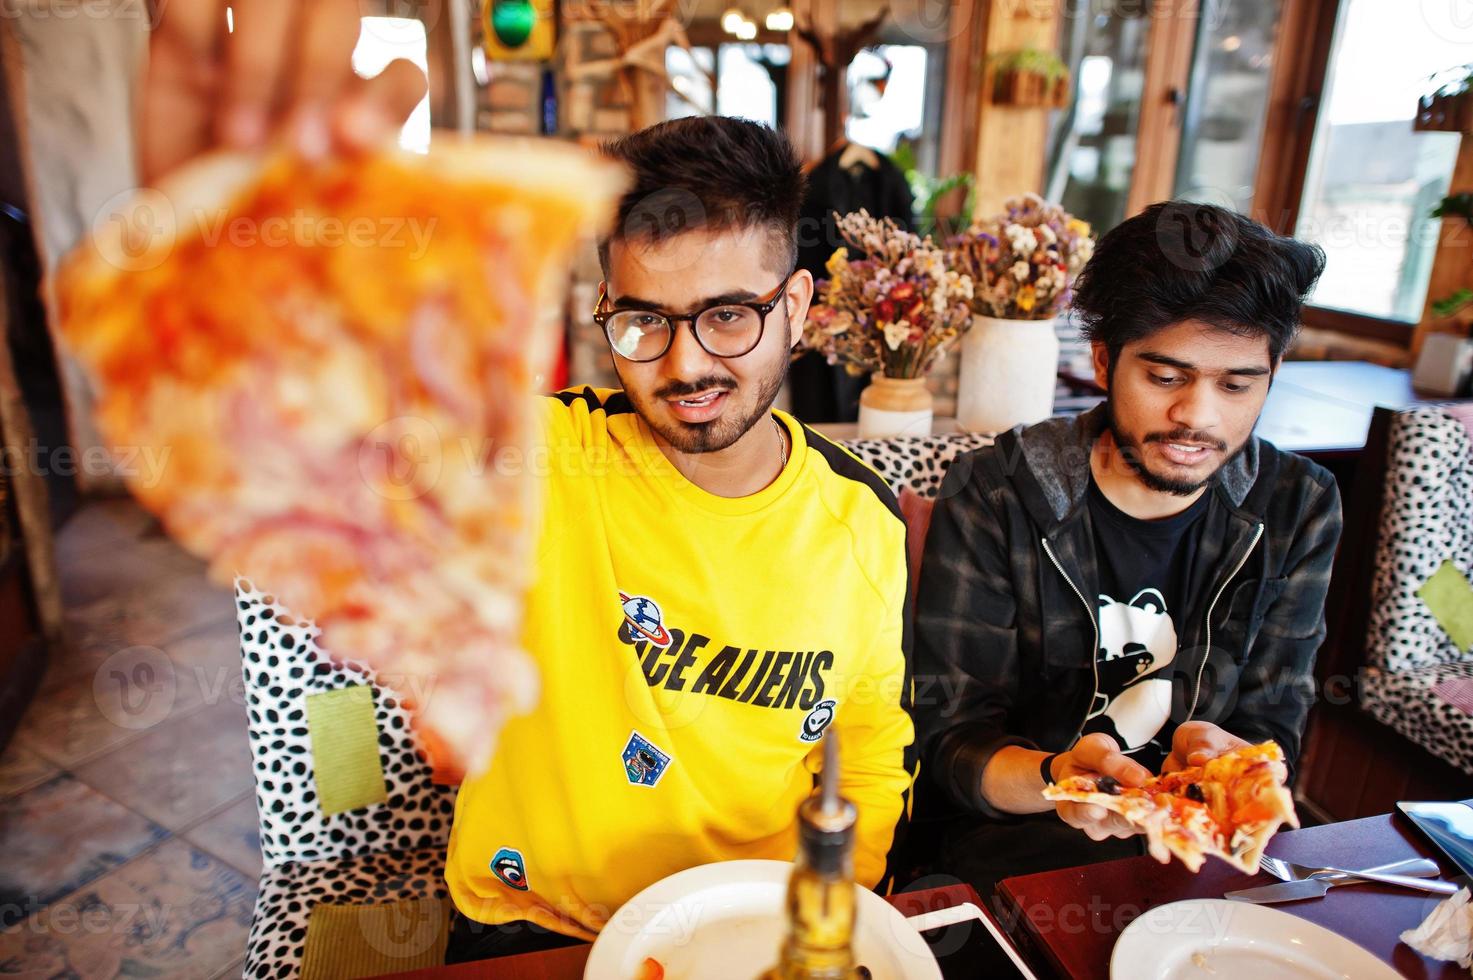 amis asiatiques gars mangeant de la pizza pendant la fête à la pizzeria. des indiens heureux s'amusant ensemble, mangeant de la nourriture italienne et assis sur un canapé. photo